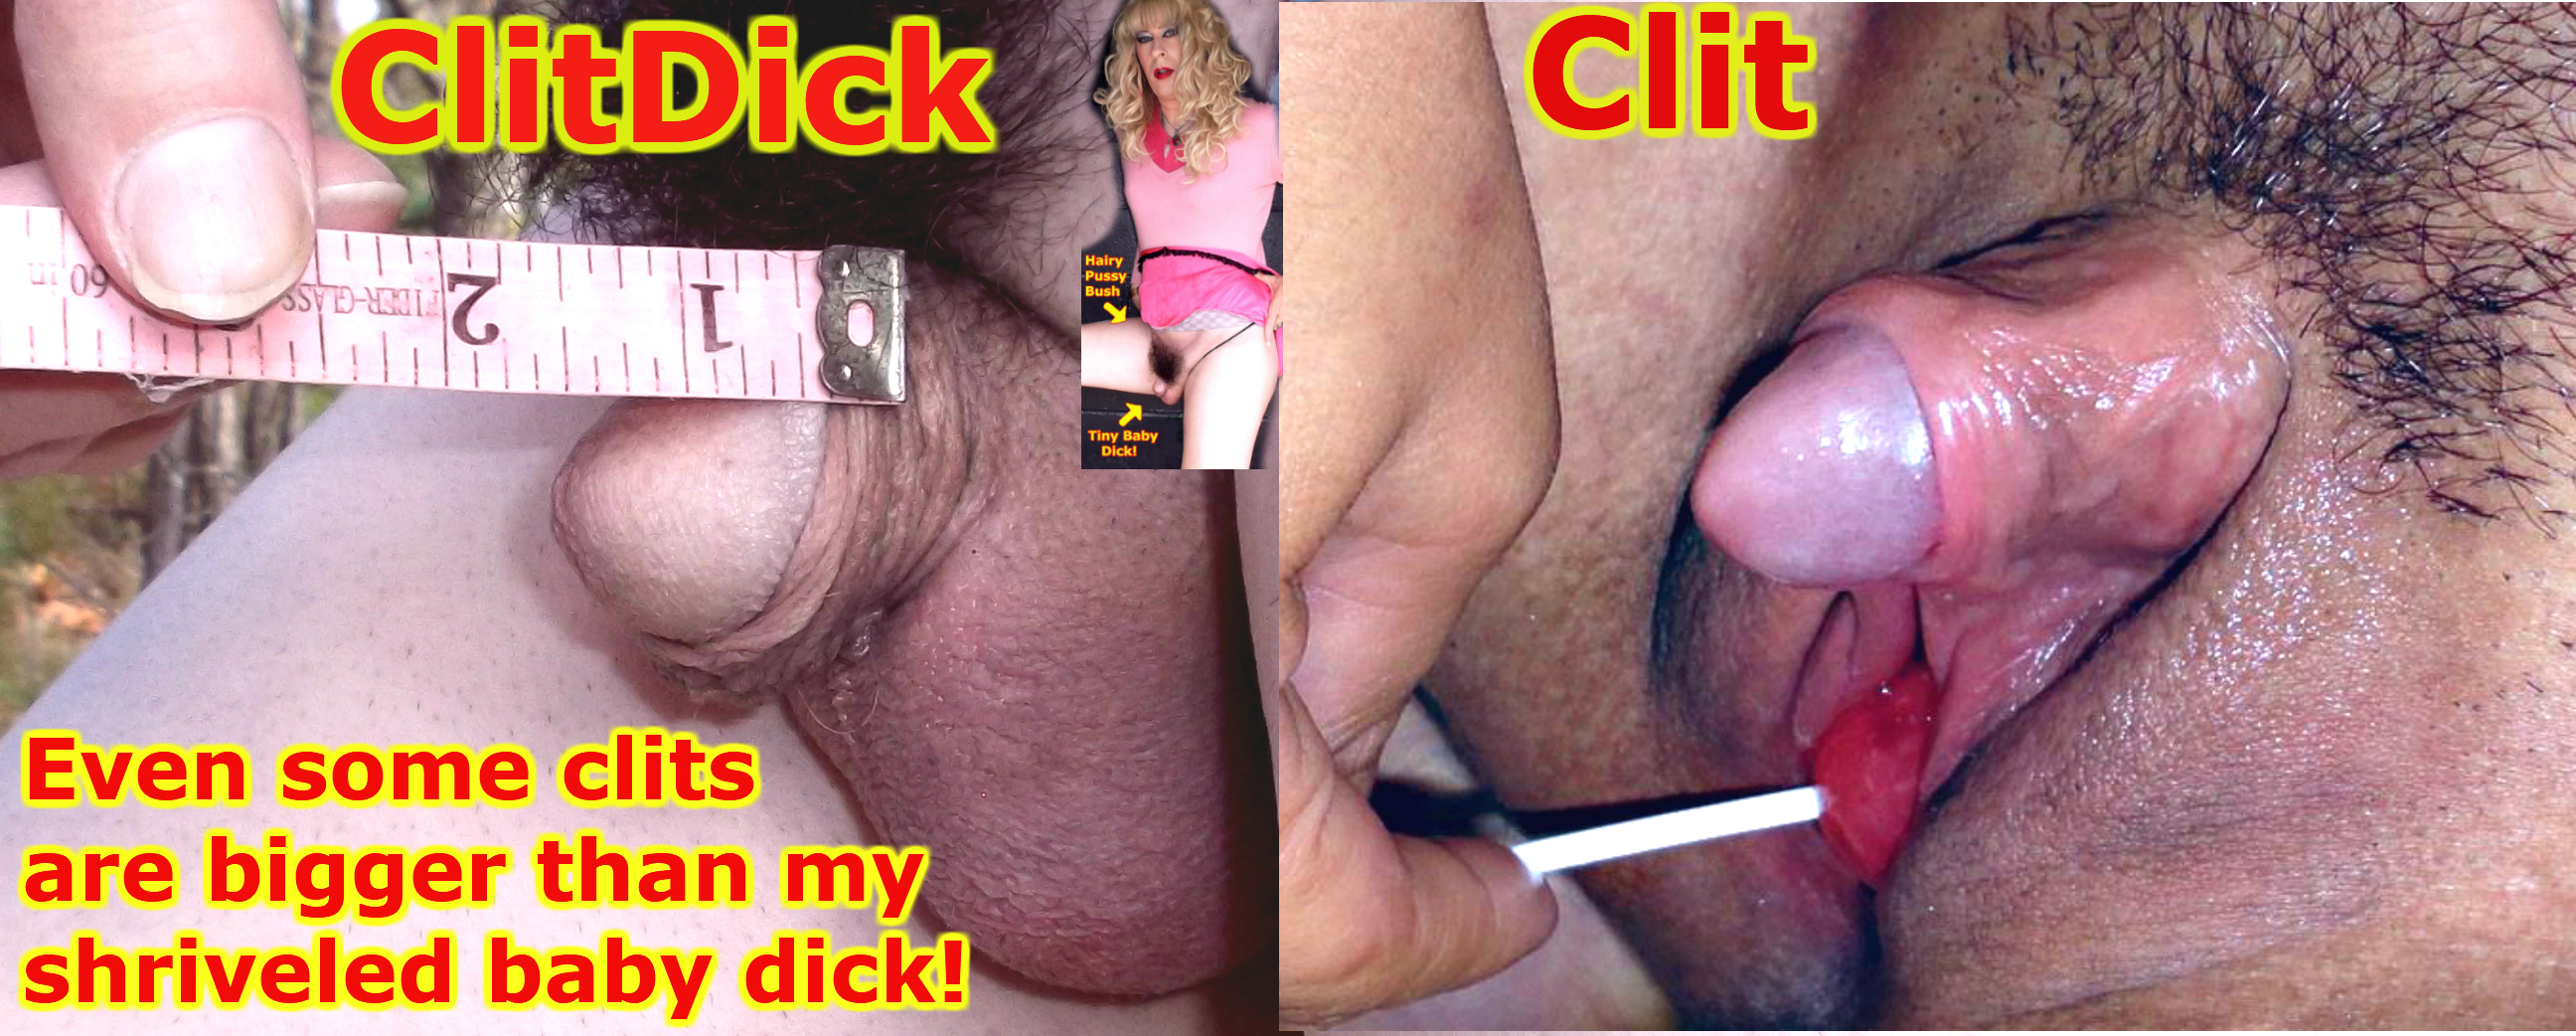 Big clit or tiny dick